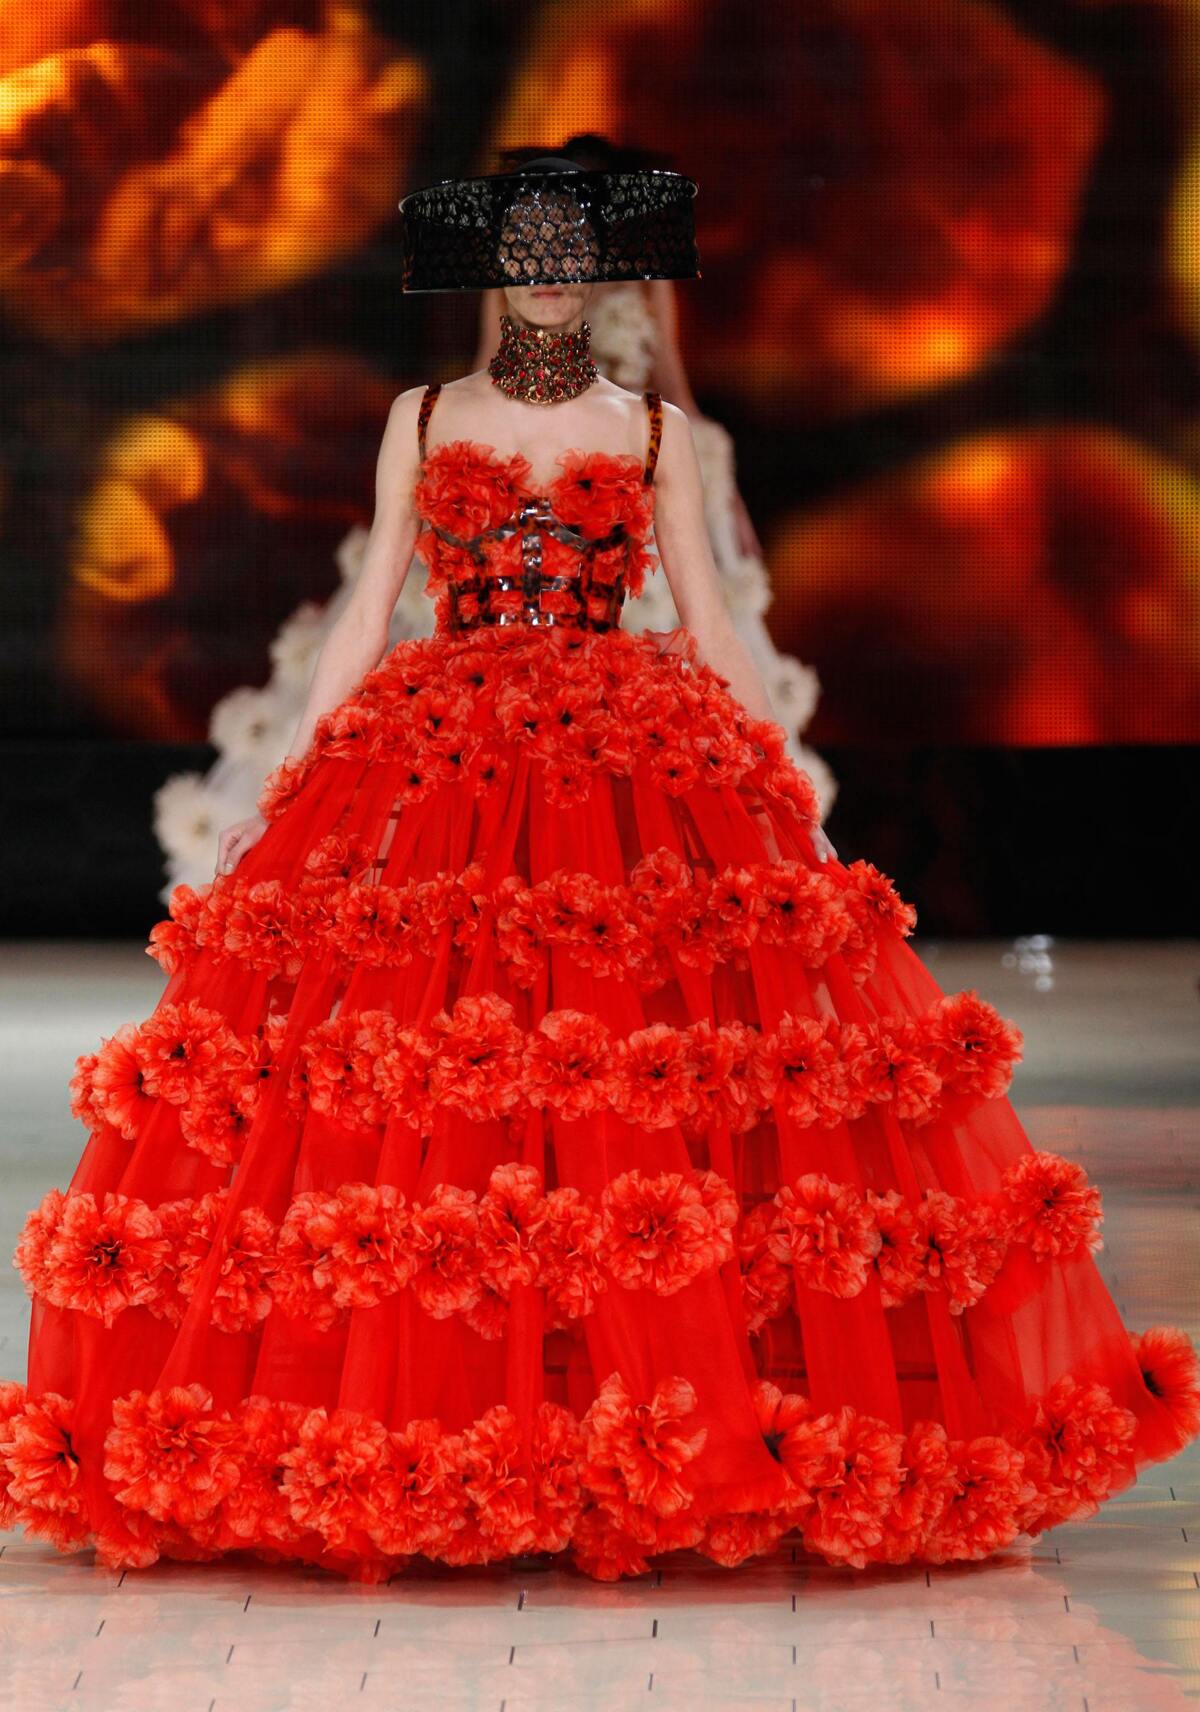 Модный показ Alexander McQueen. Весна / лето 2013